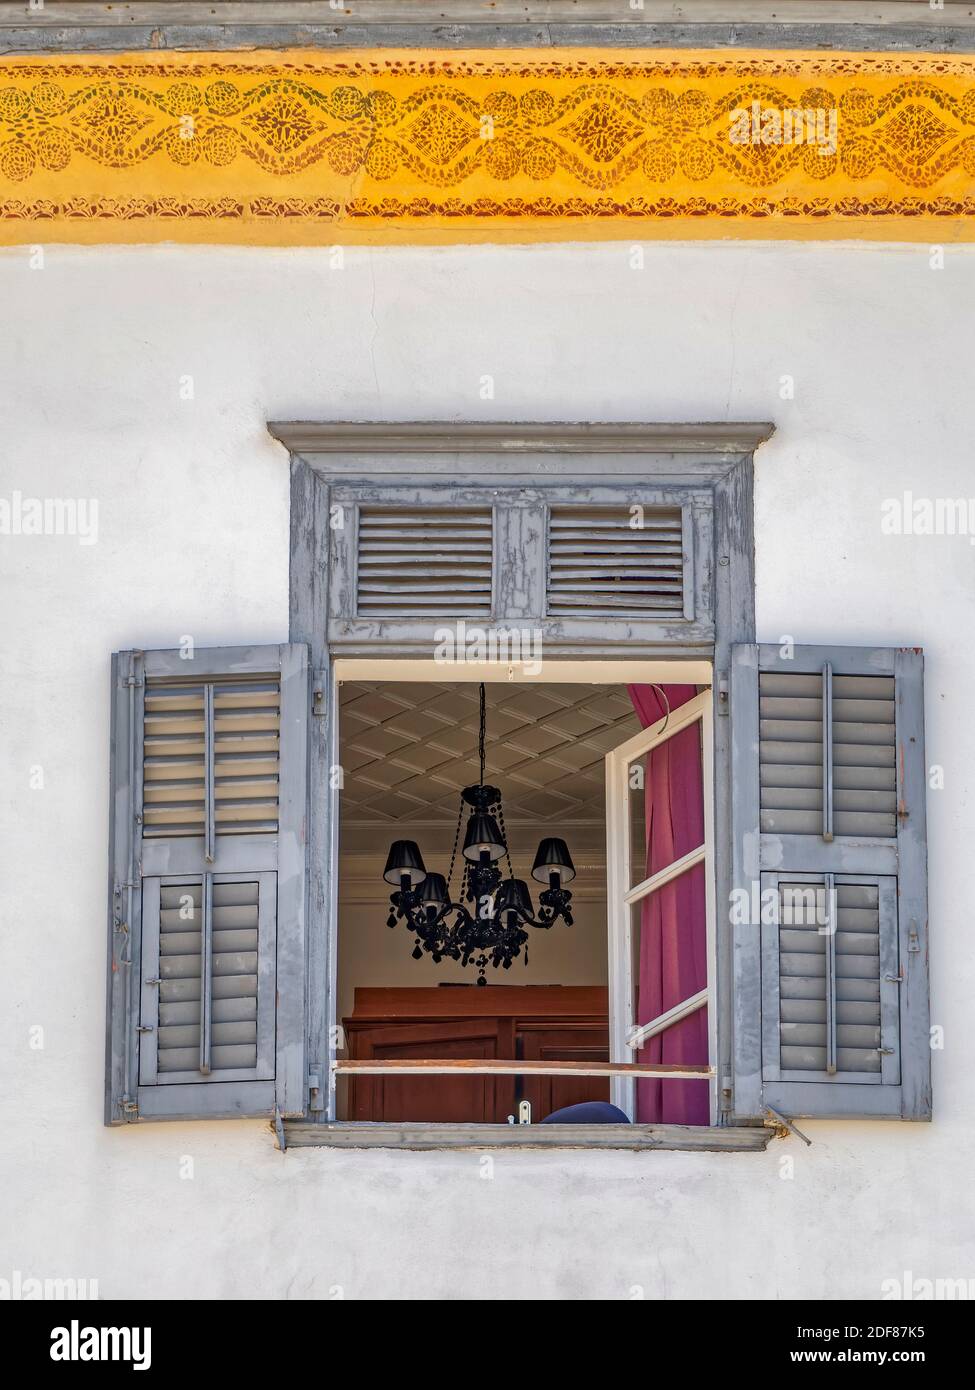 Ricordi veneziani. La striscia dorata e il lampadario vintage che vediamo attraverso la finestra aperta fanno parte di una facciata di casa glamour, Foto Stock